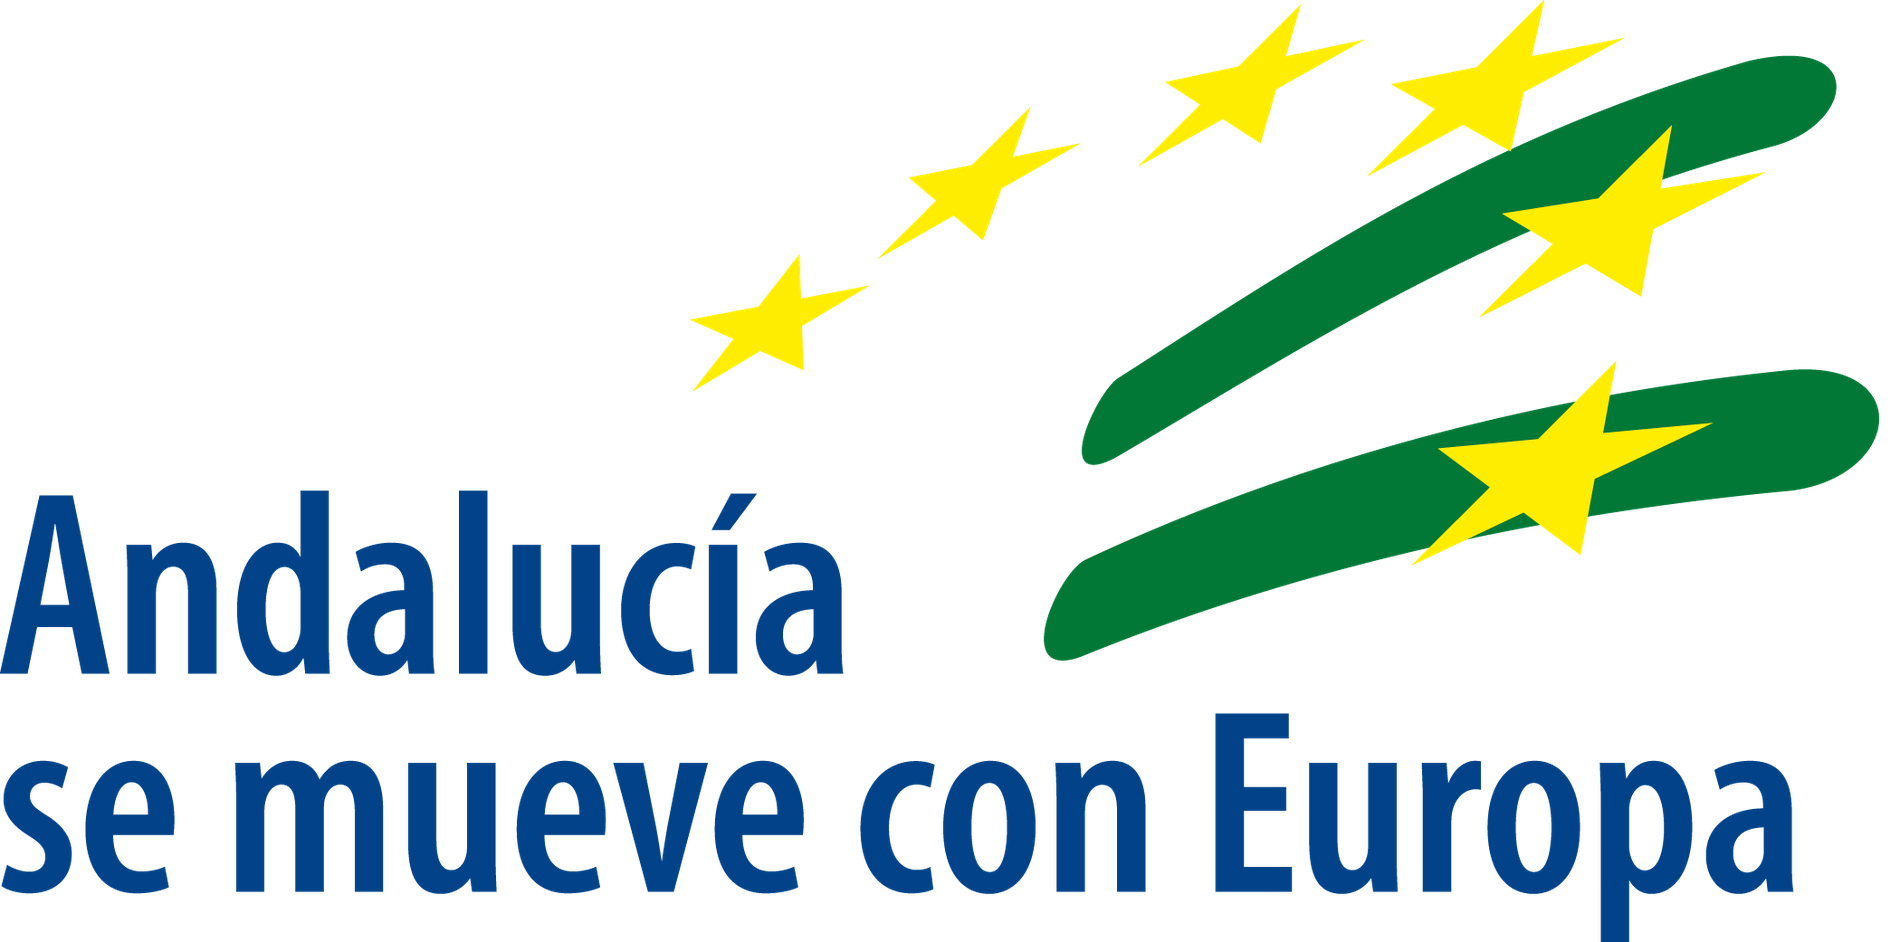 un logotipo que dice andalucia se mueve con europa